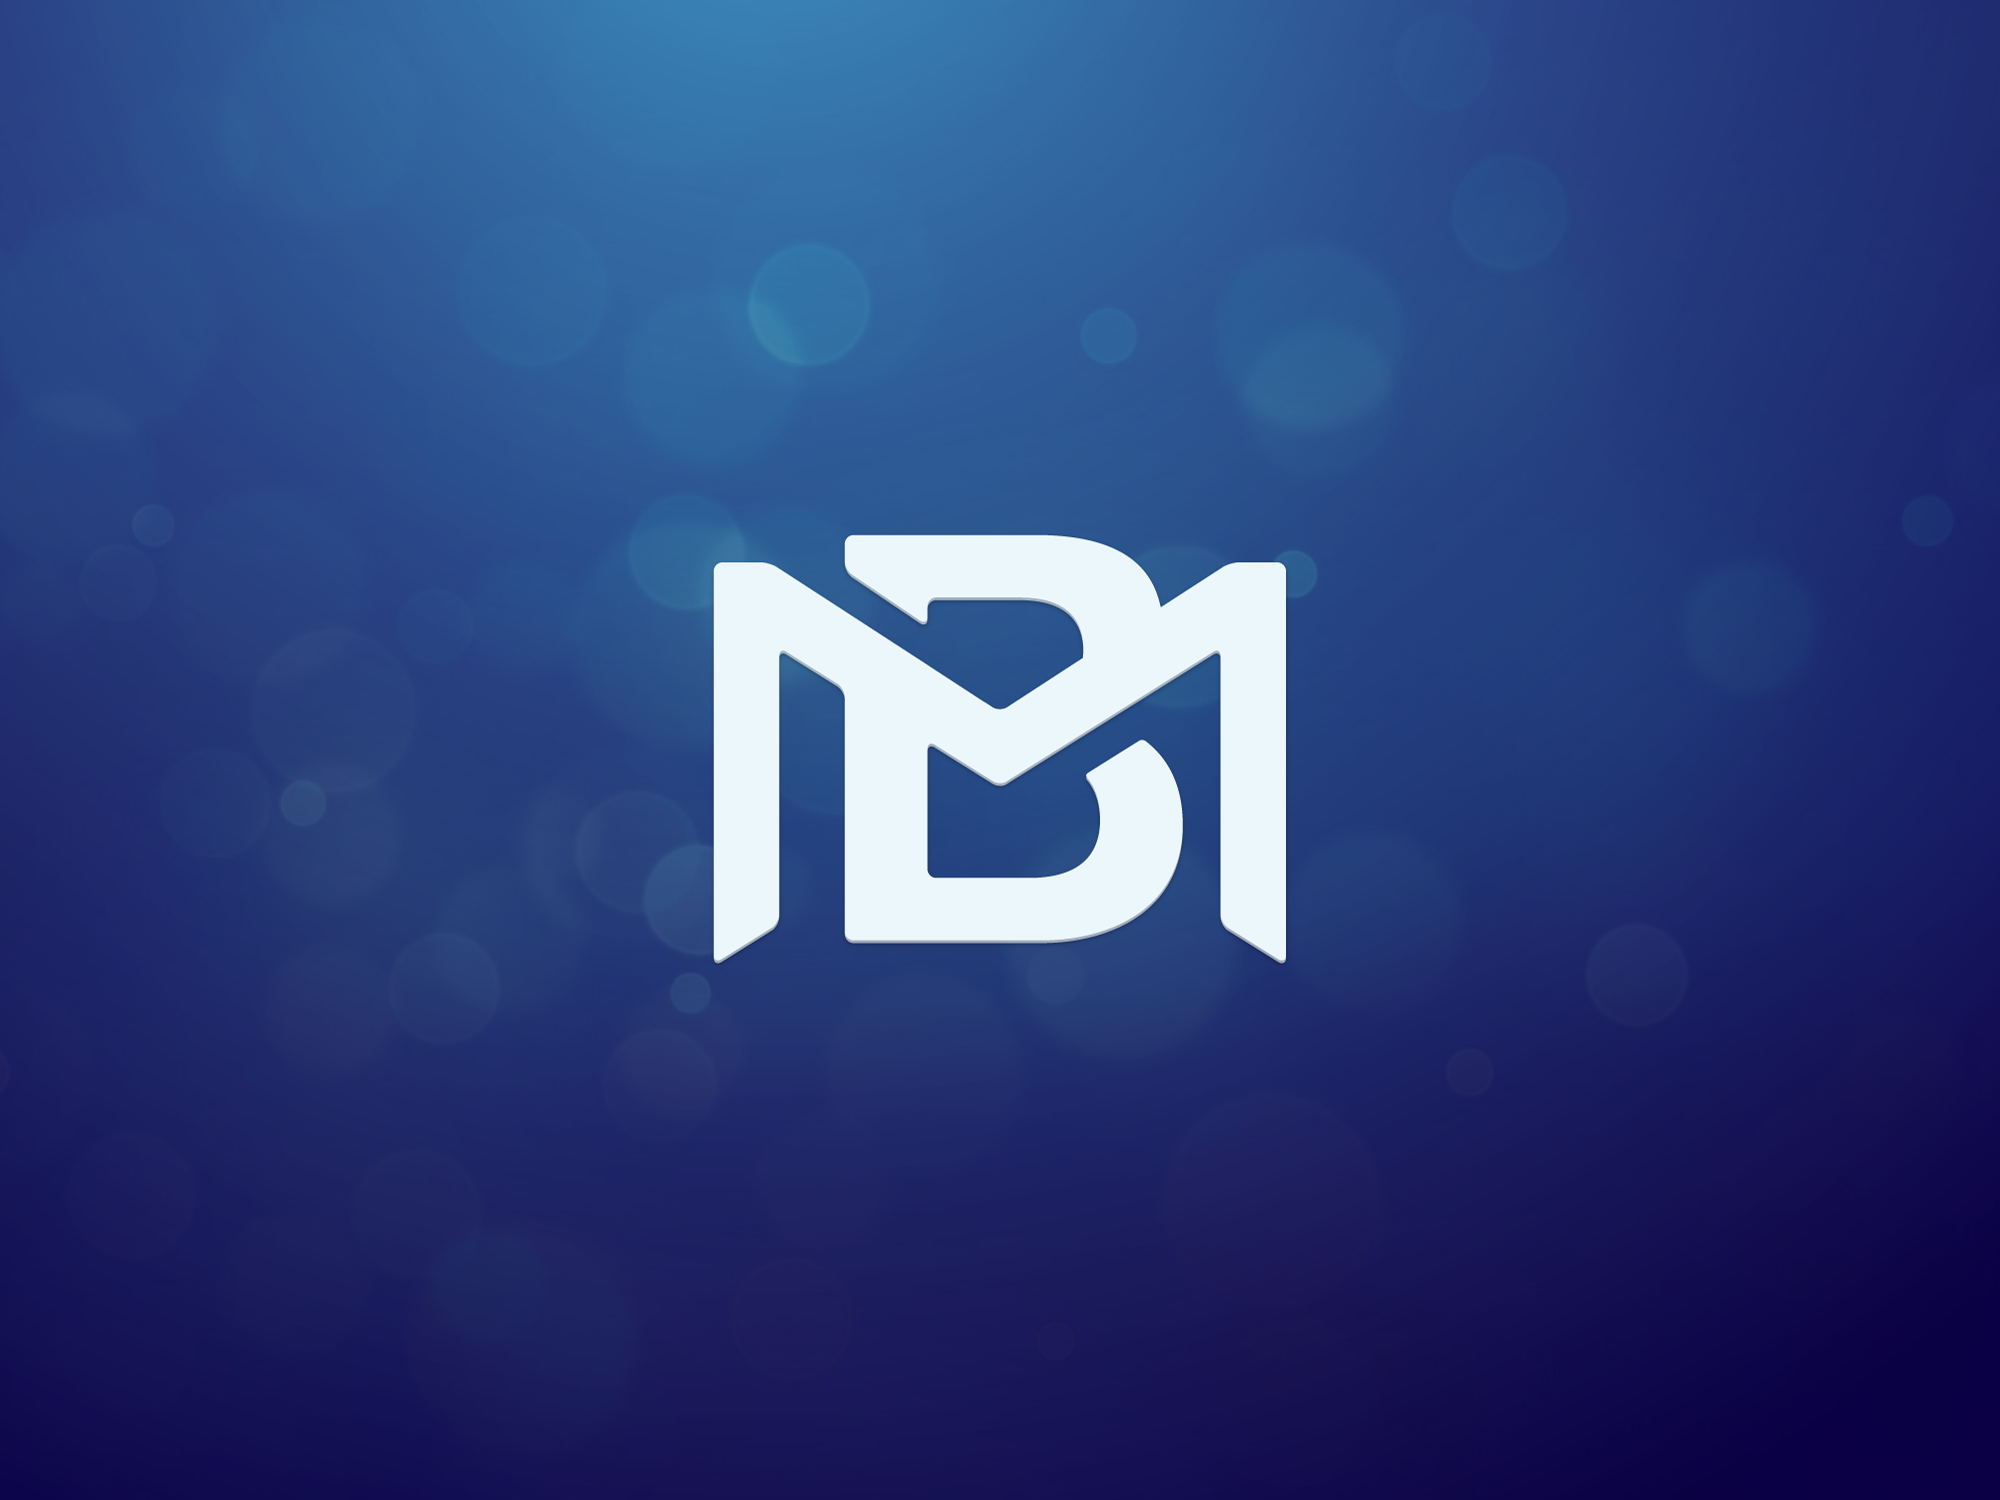 BM Logo PNG Vector (SVG) Free Download